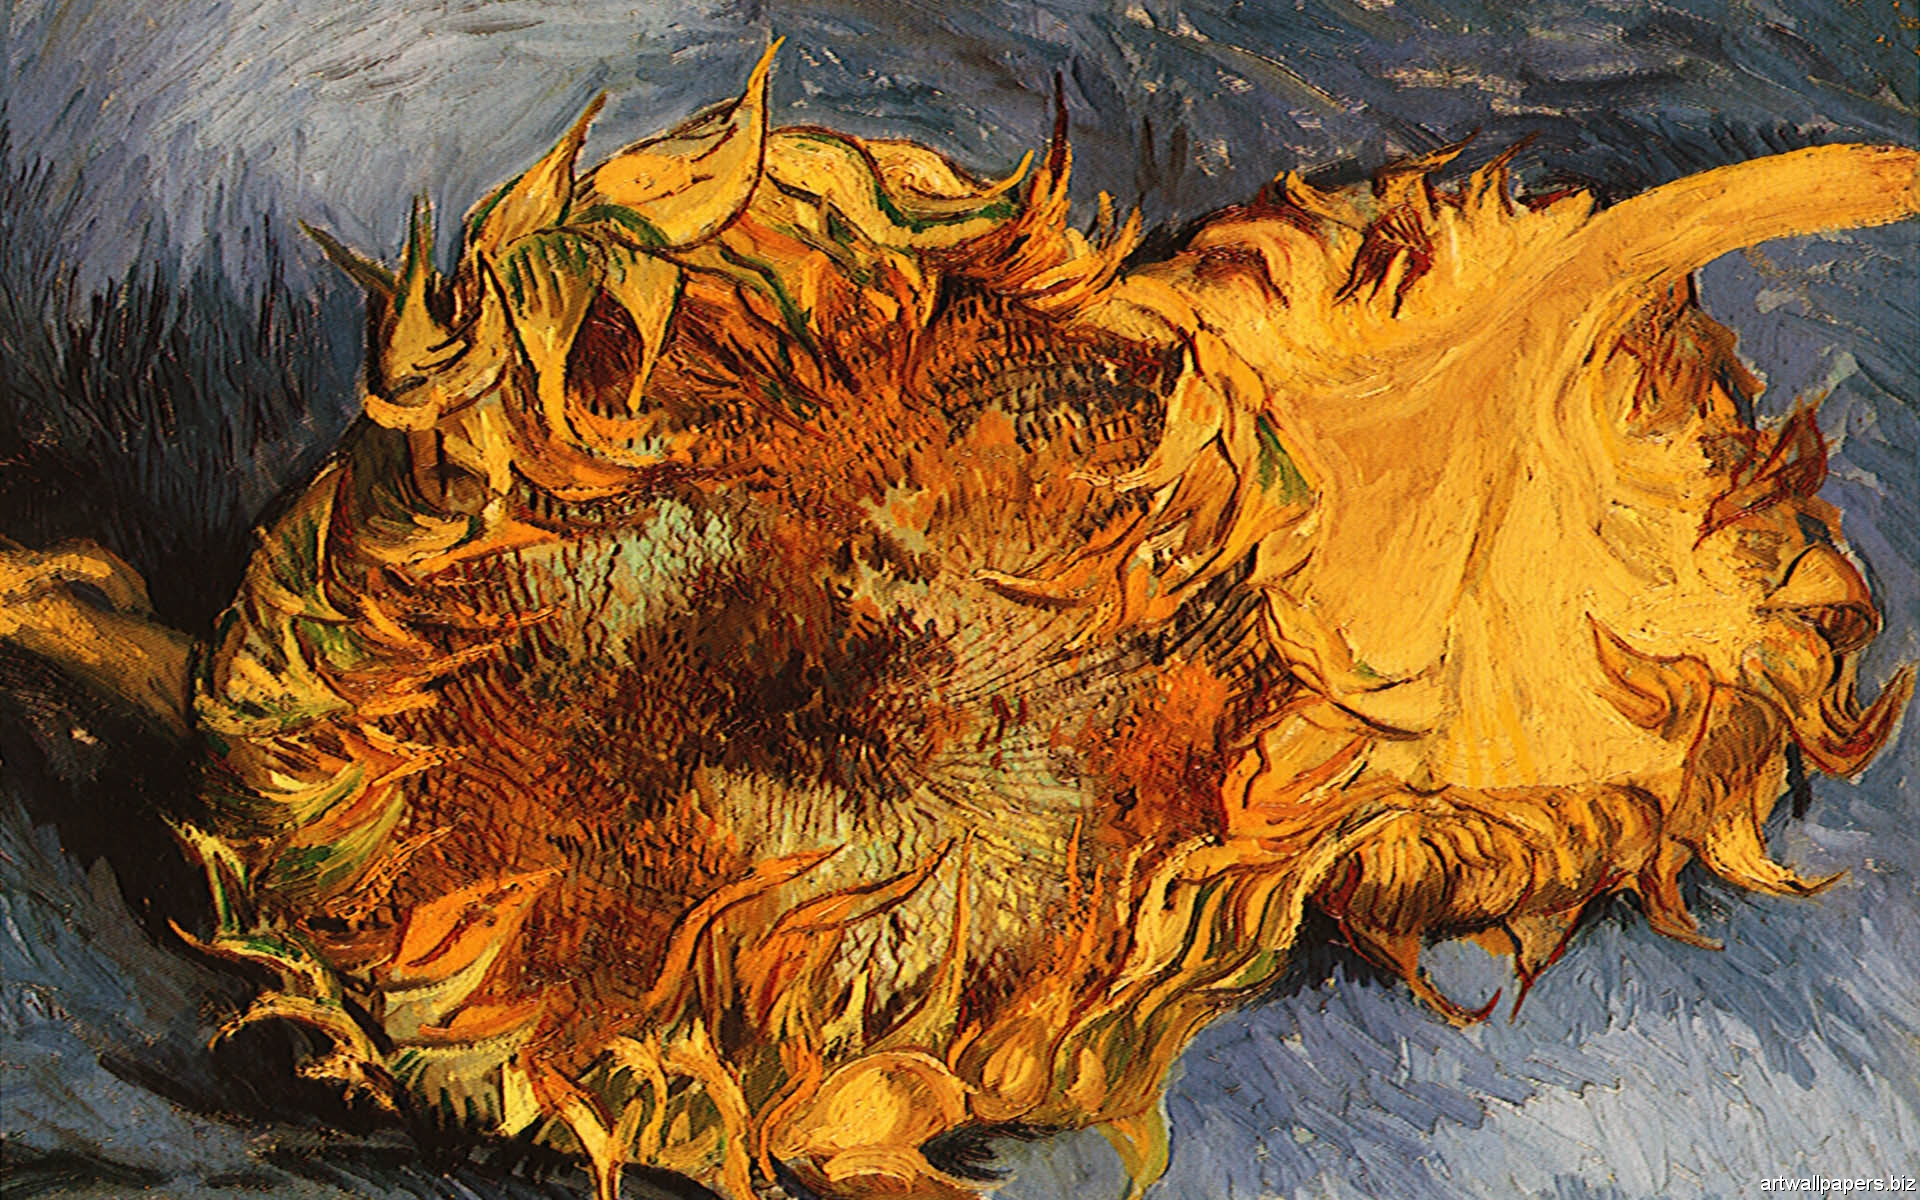 Vincent Van Gogh Wallpaper HD Widescreen Full 1080p